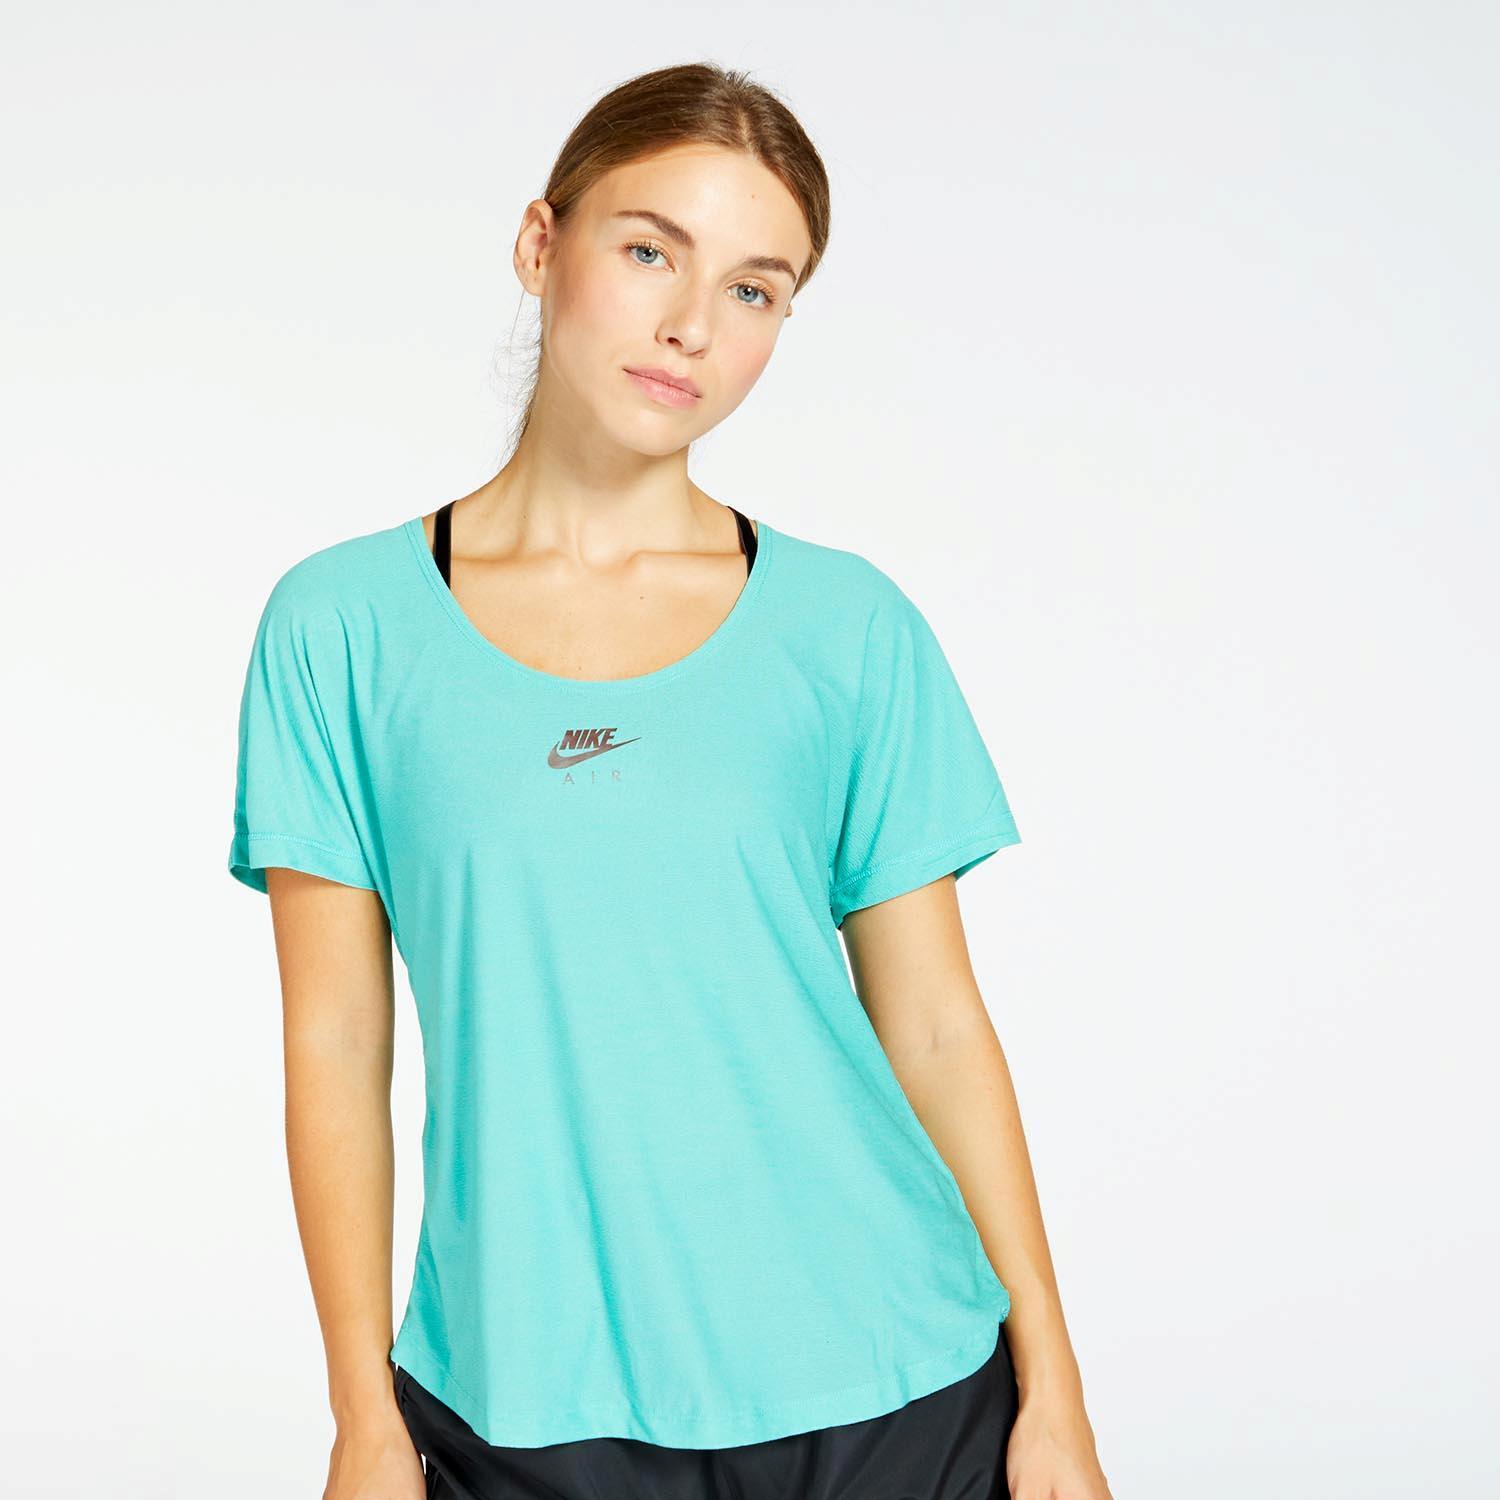 Nike Air - Turquoise - T-shirt de course à pied femme sports taille S